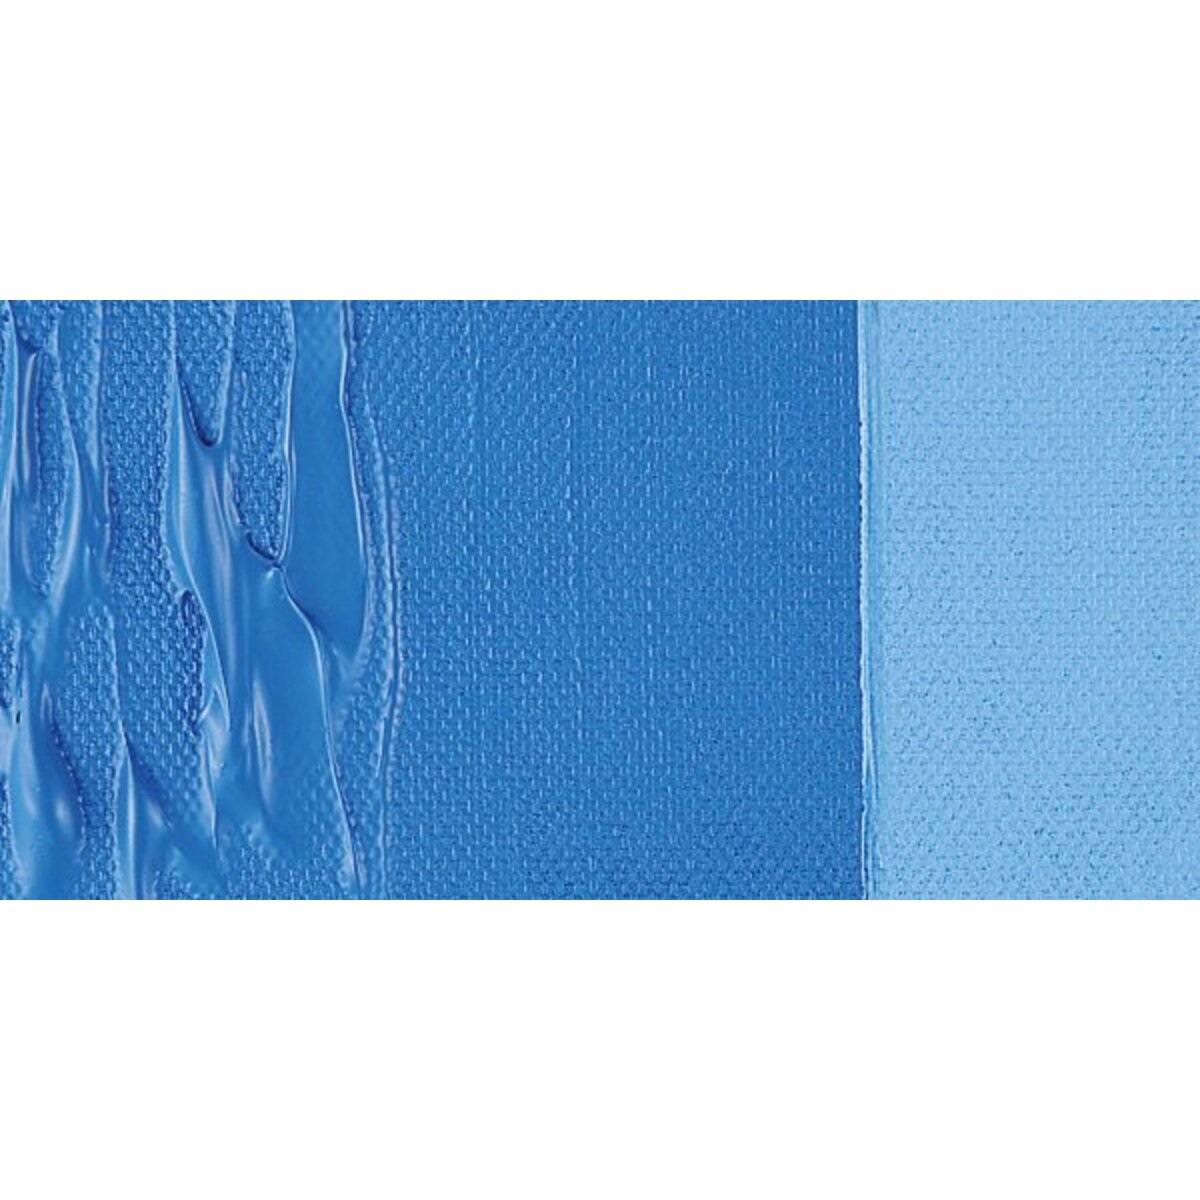 Cerulean Blue Artist Acrylic Paints - 534 - Cerulean Blue Paint